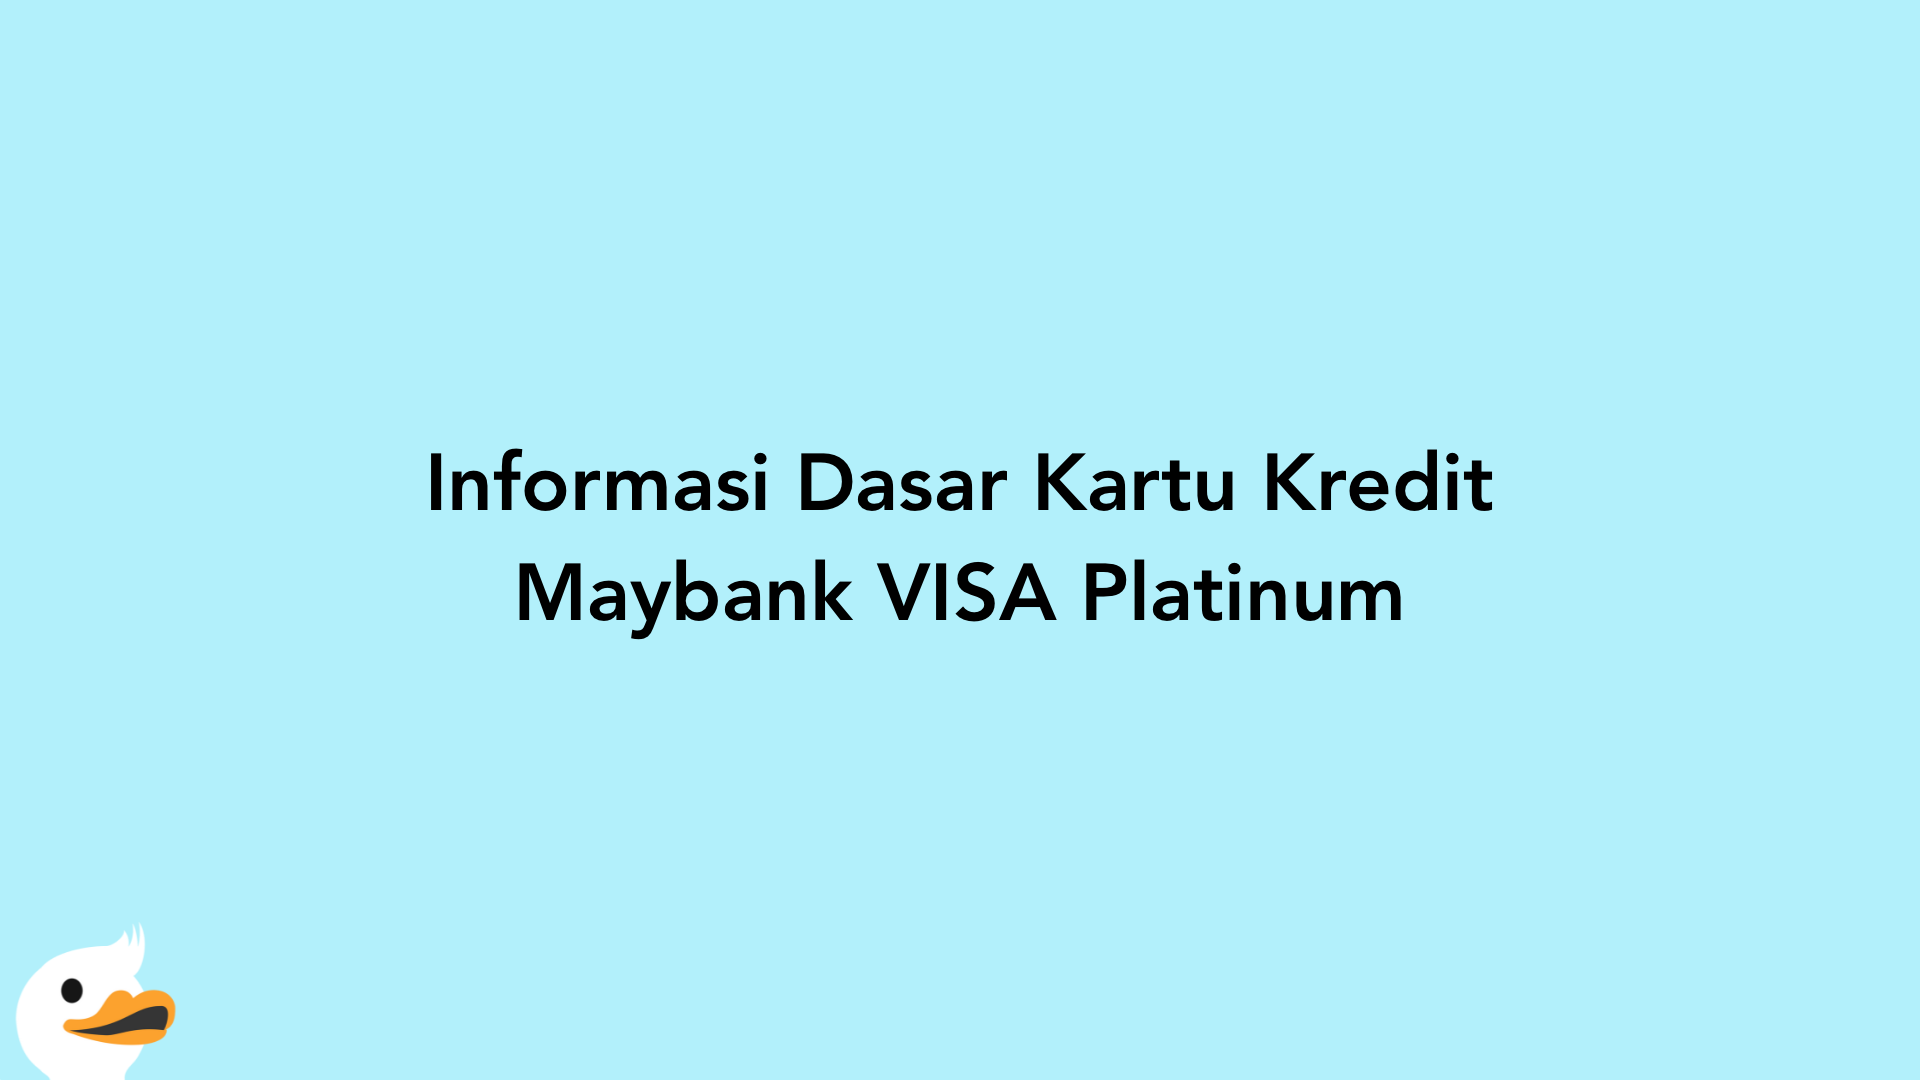 Informasi Dasar Kartu Kredit Maybank VISA Platinum